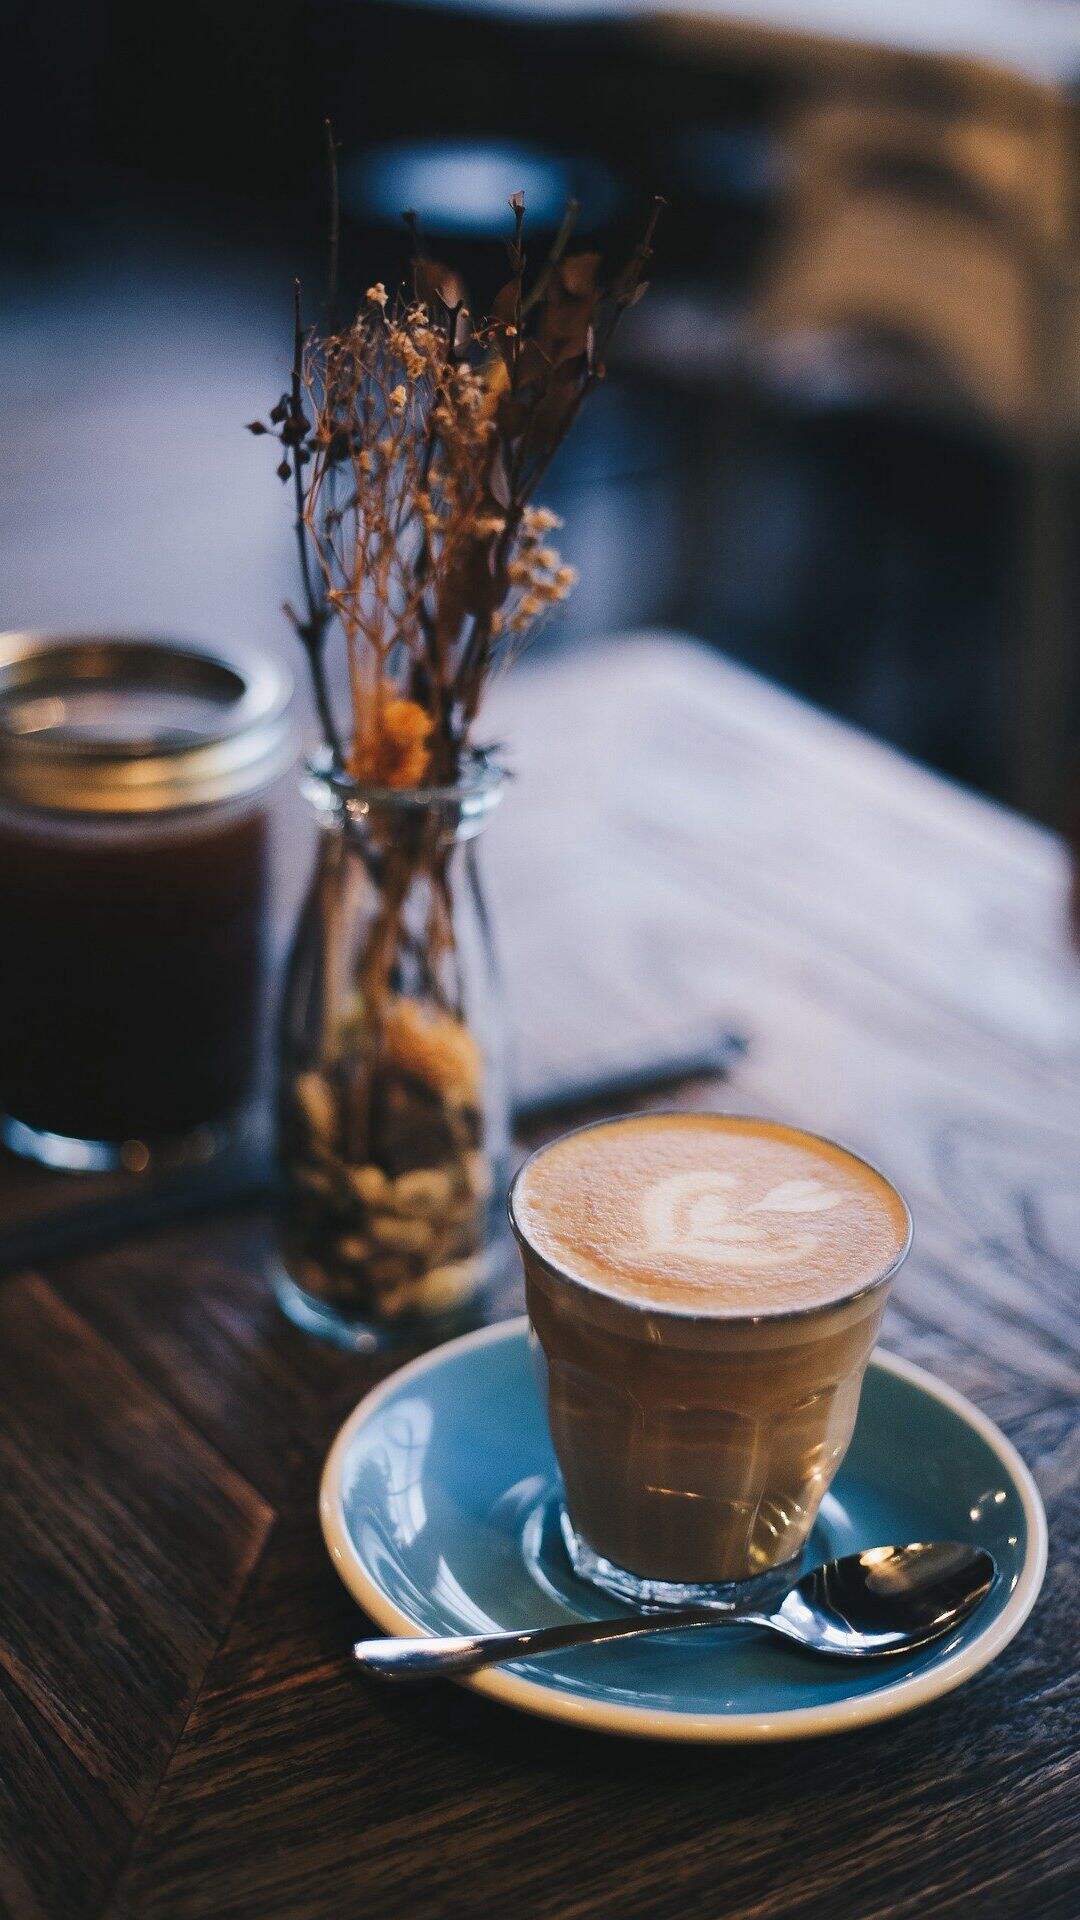 卡布奇诺 拿铁咖啡 奶茶咖啡 桌子 安静的环境唯美手机壁纸图片